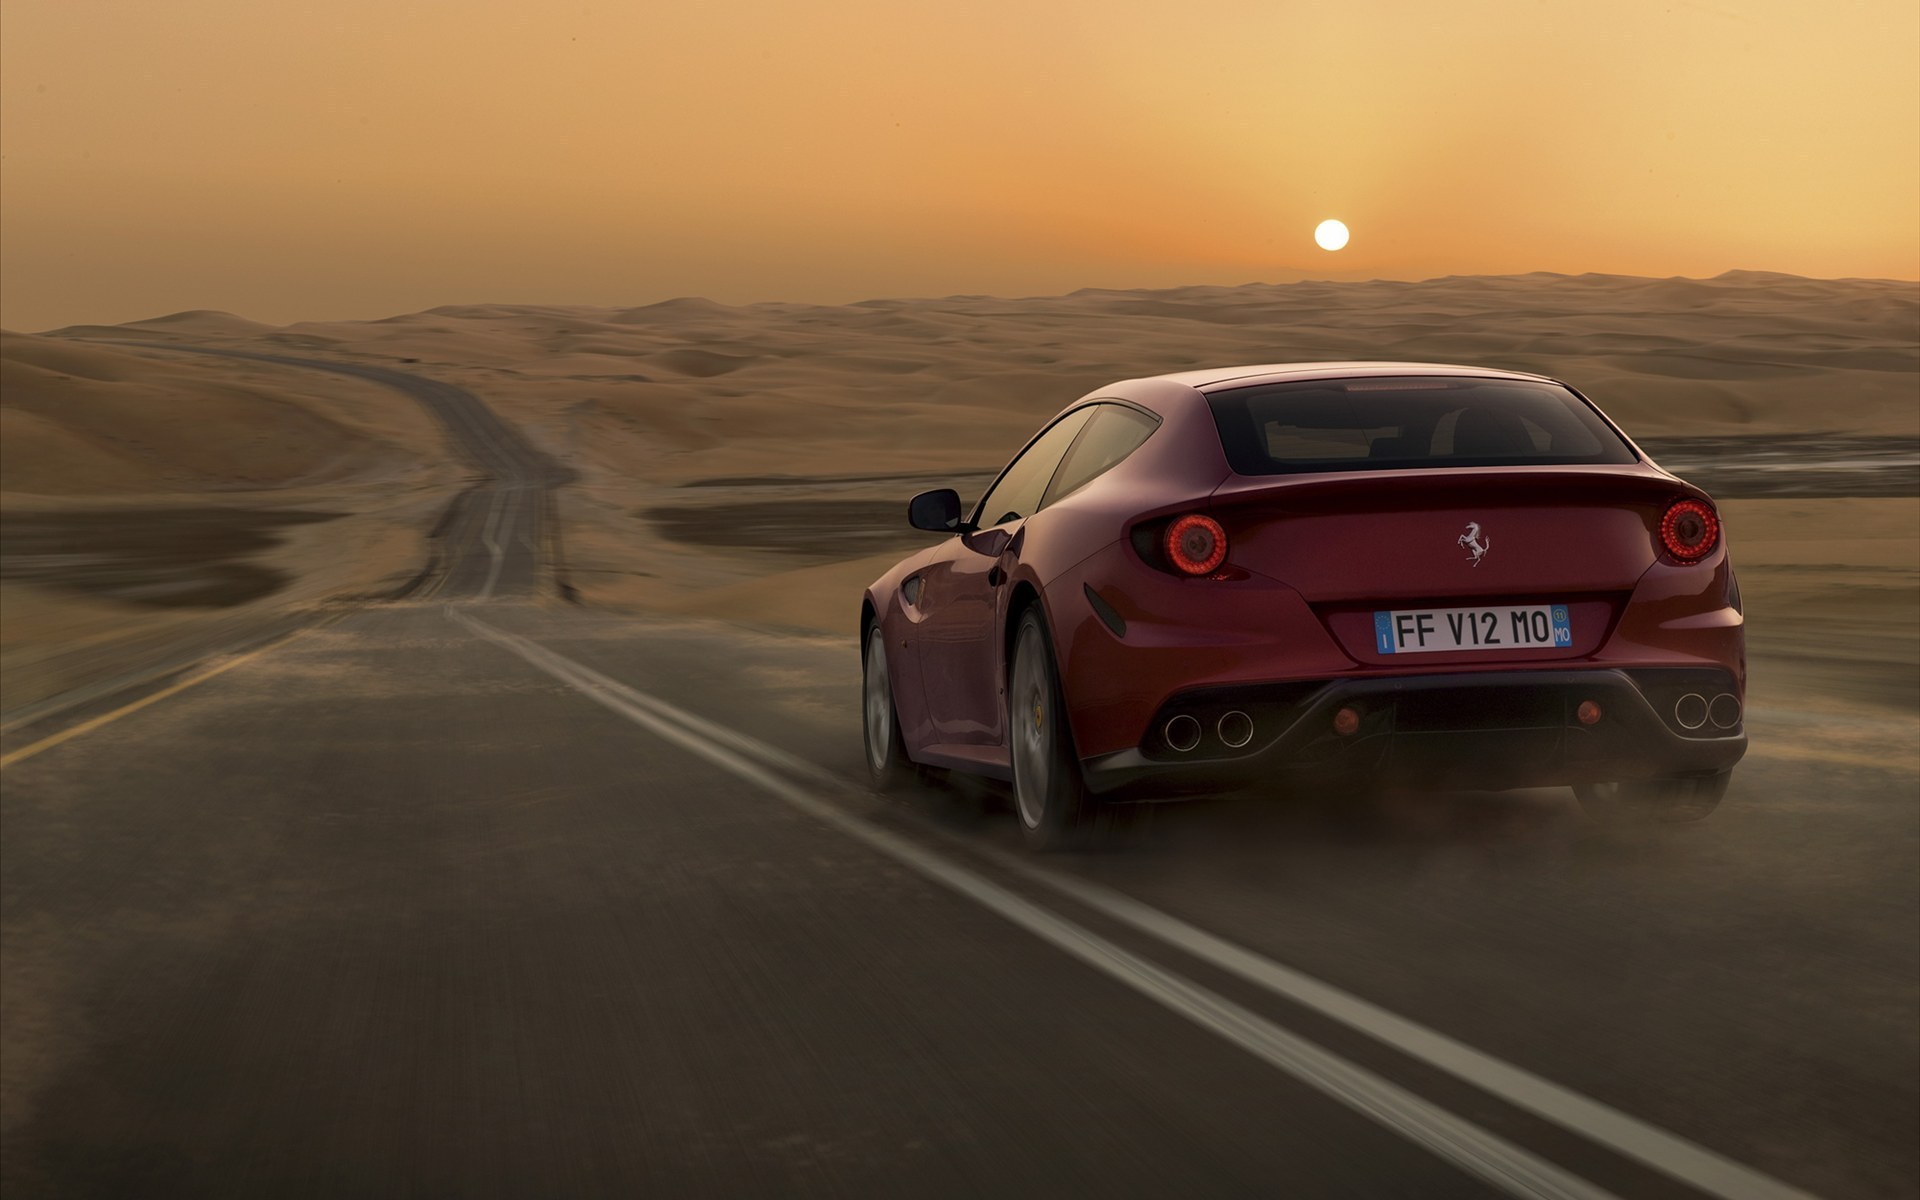 3d обои Ferrari / Феррари на дороге среди пустыни на фоне заката (FF V12 MO)  фразы # 83679